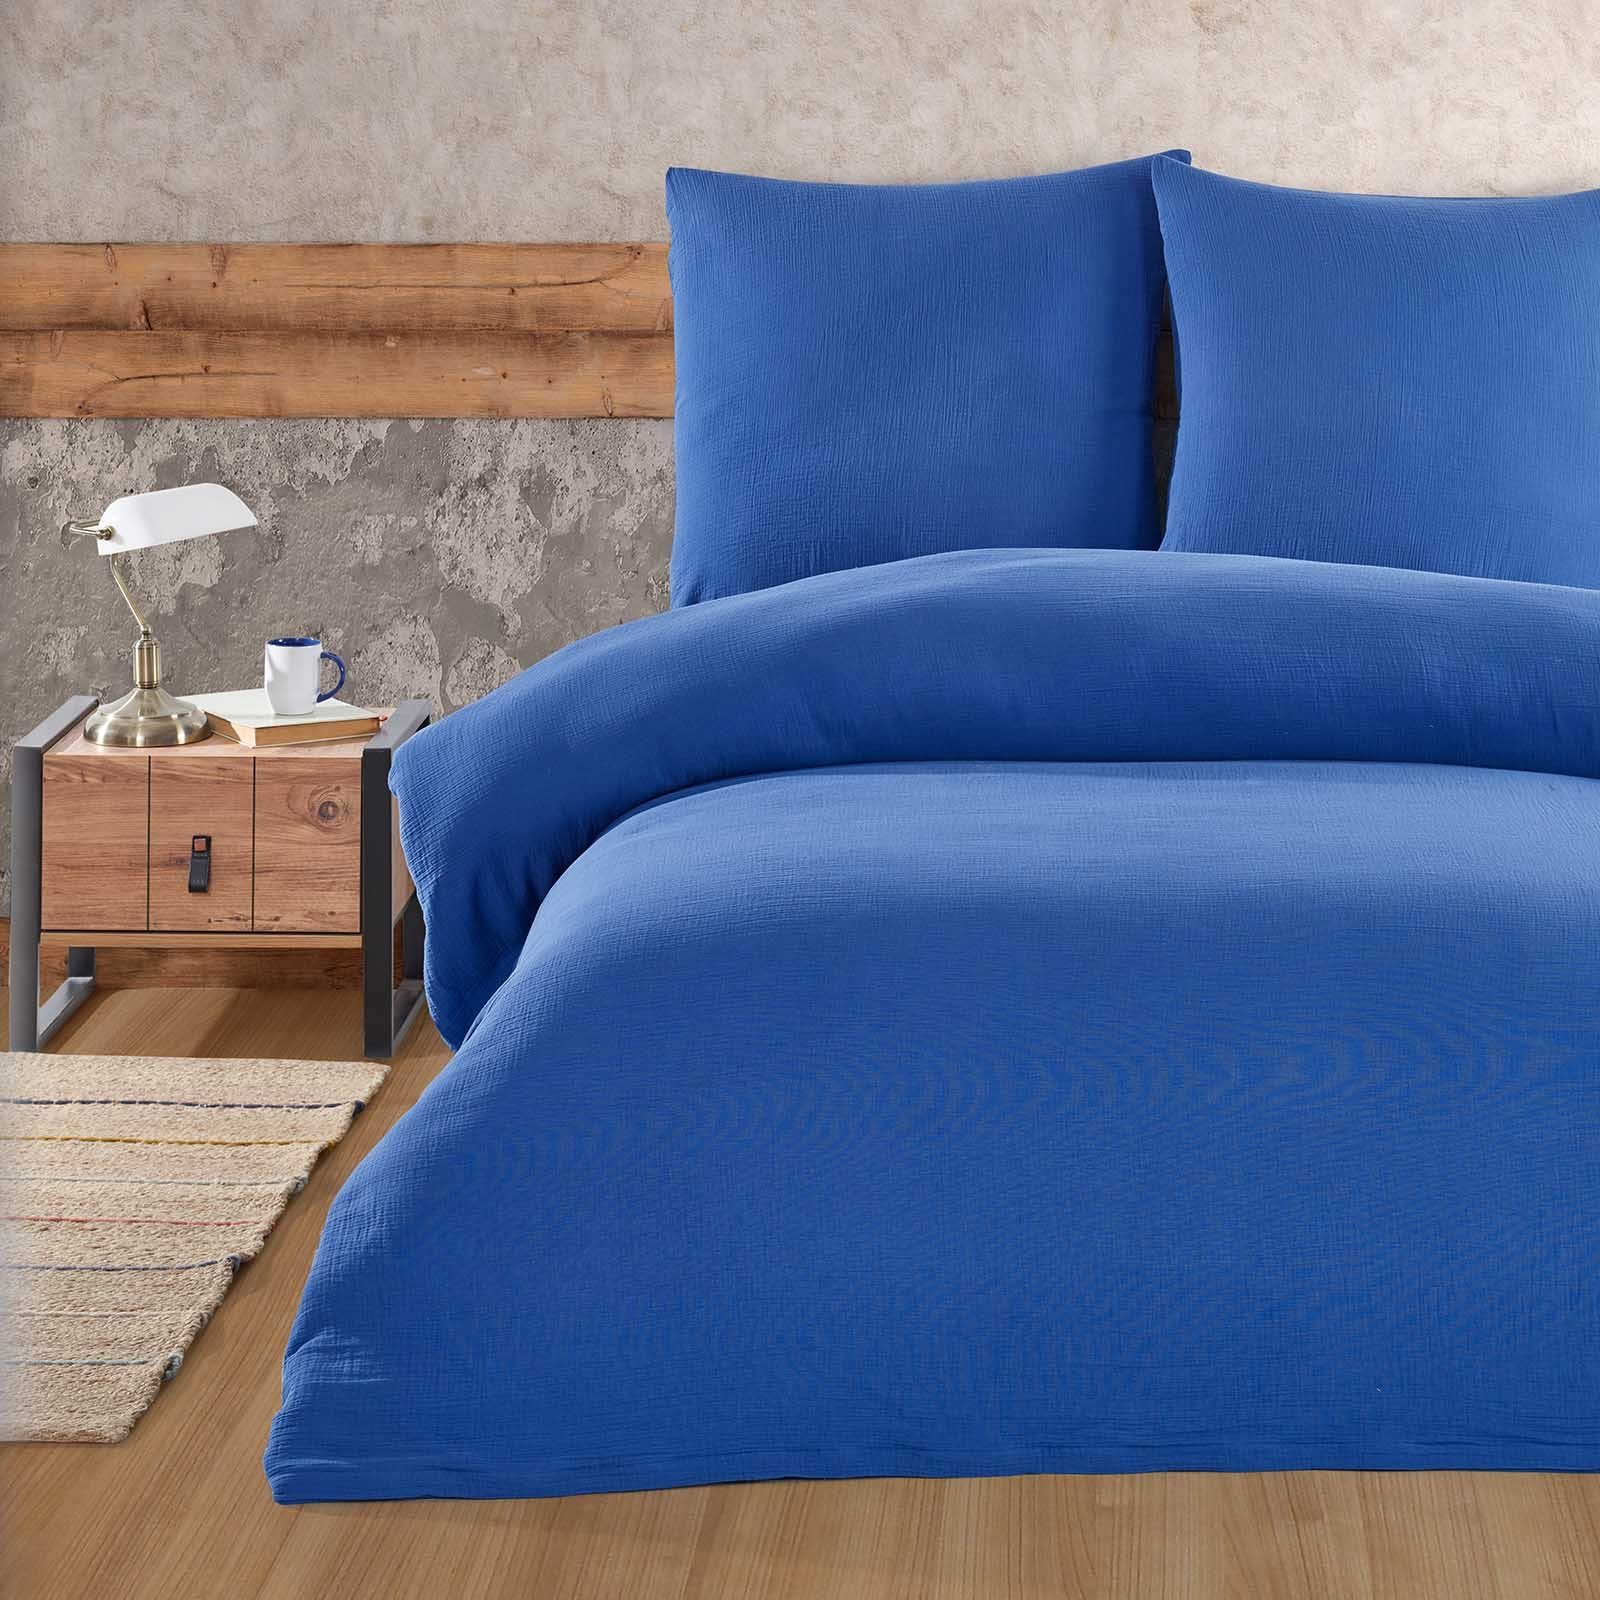 Bettwäsche Luxury, Buymax, Musselin 100% Baumwolle, 3 teilig, 200x220 cm, Bettbezug Set, Uni einfarbig, mit Reißverschluss, Blau